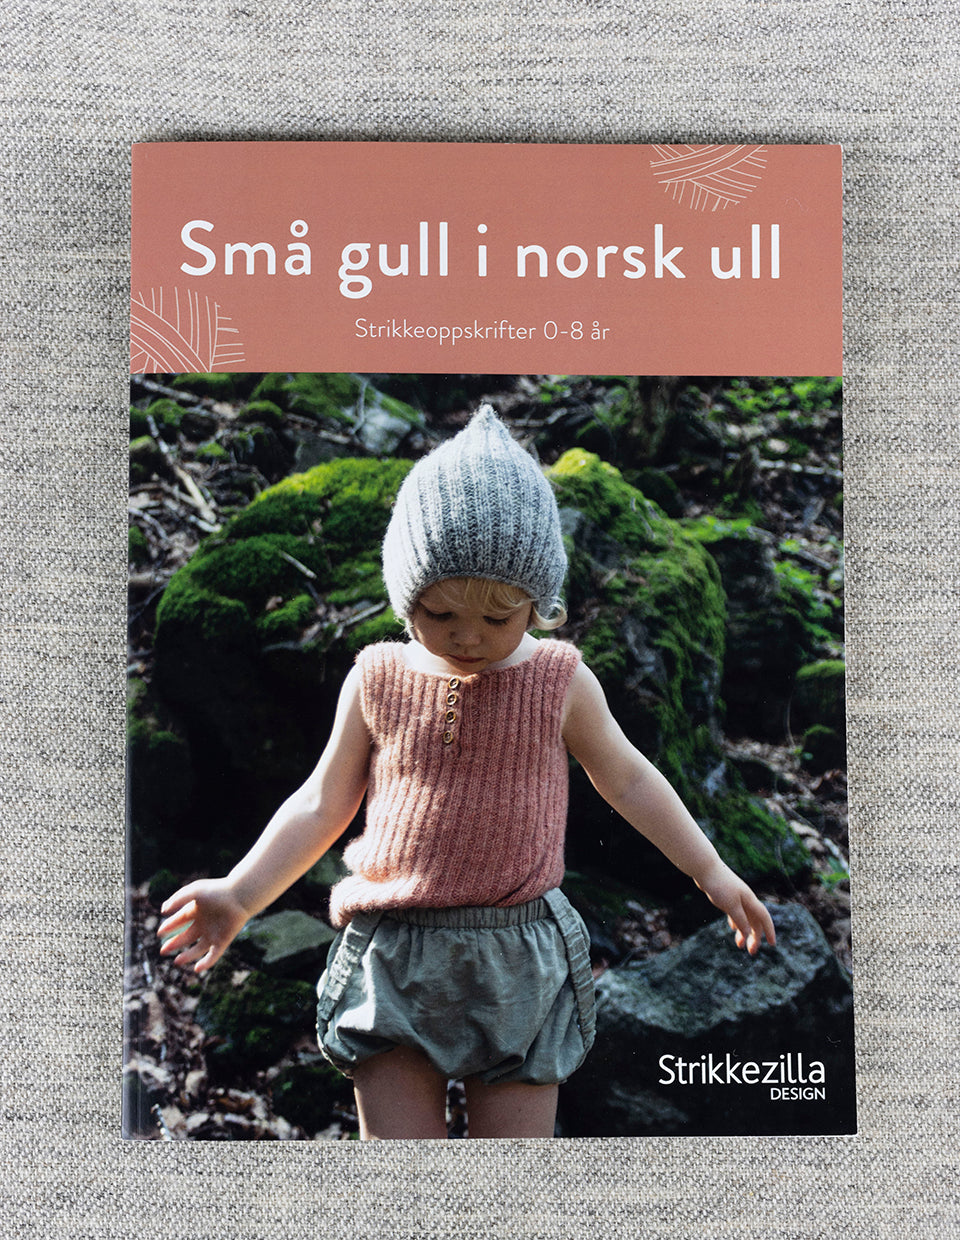 Strikkeheftet "Små gull i norsk ull" av Strikkezilla design, med 200 gr garn